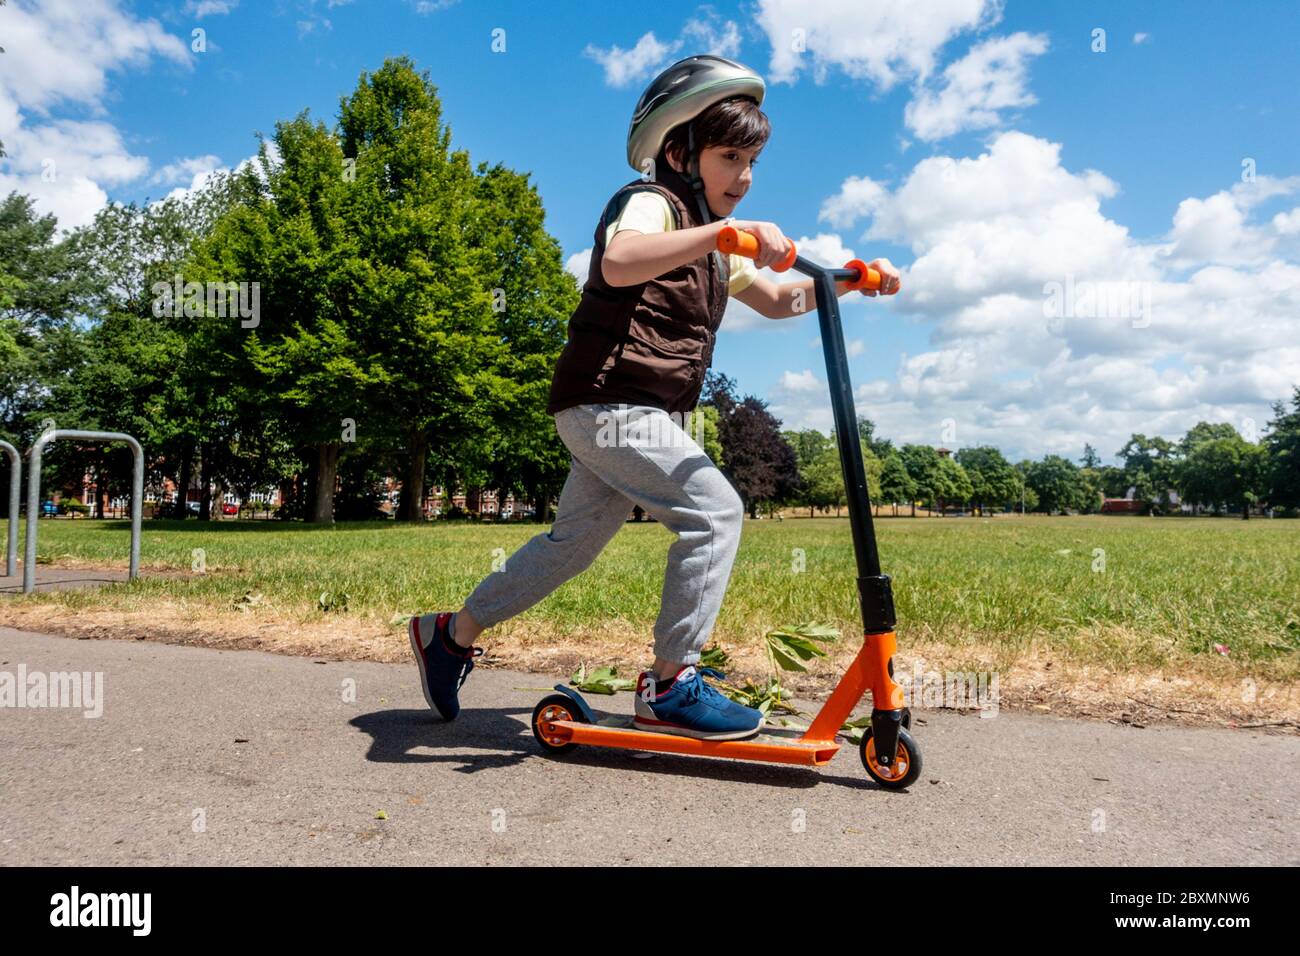 Ein kleiner Junge spielt mit und schiebt seinen Roller an einem sonnigen Tag im Park. Blauer Himmel und grüne Bäume. Energisches und aktives Kind. Stockfoto